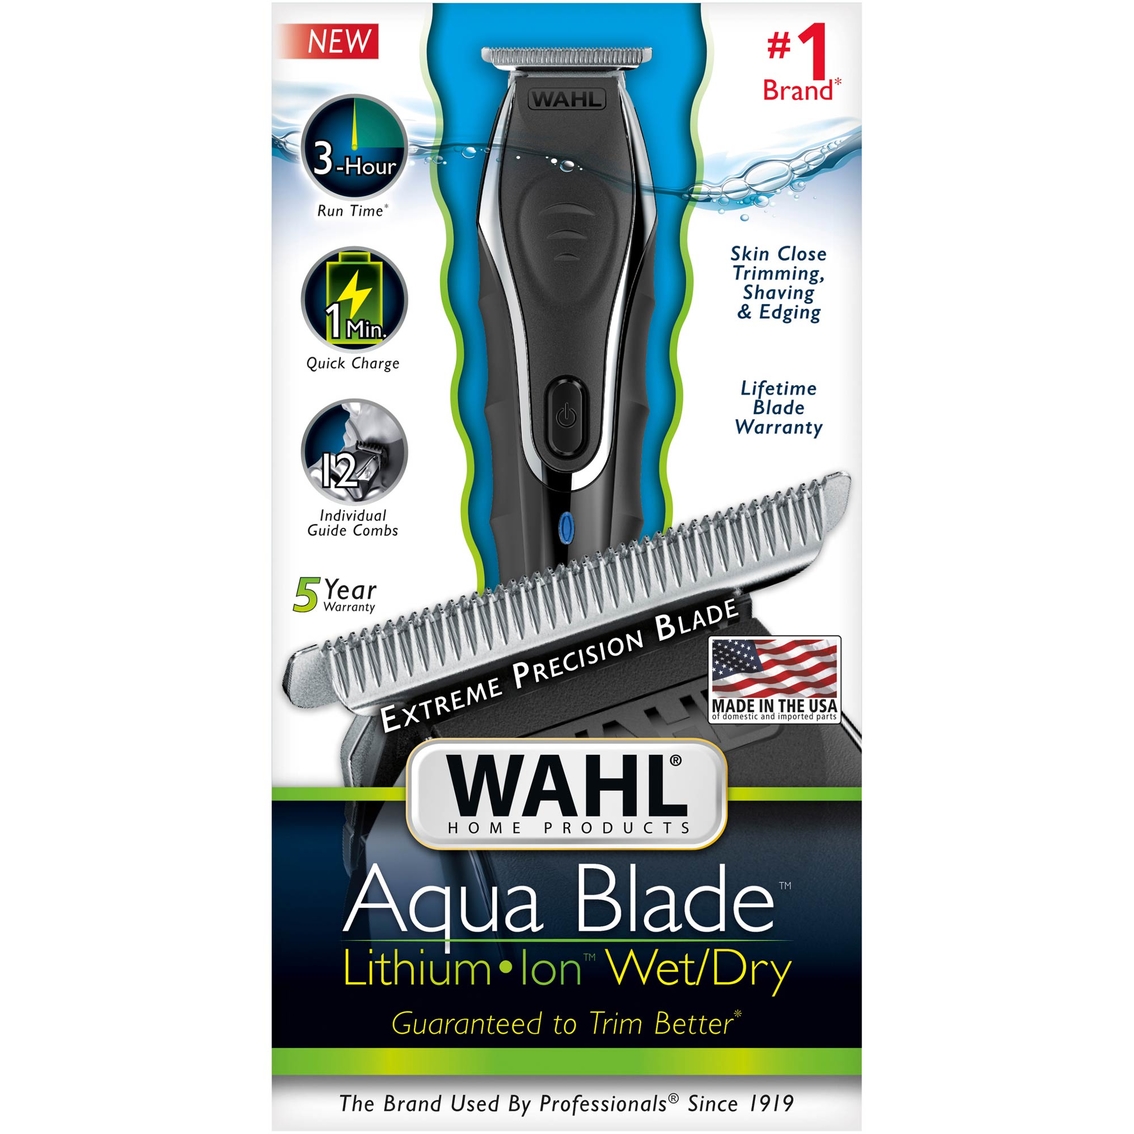 wahl aqua blade review